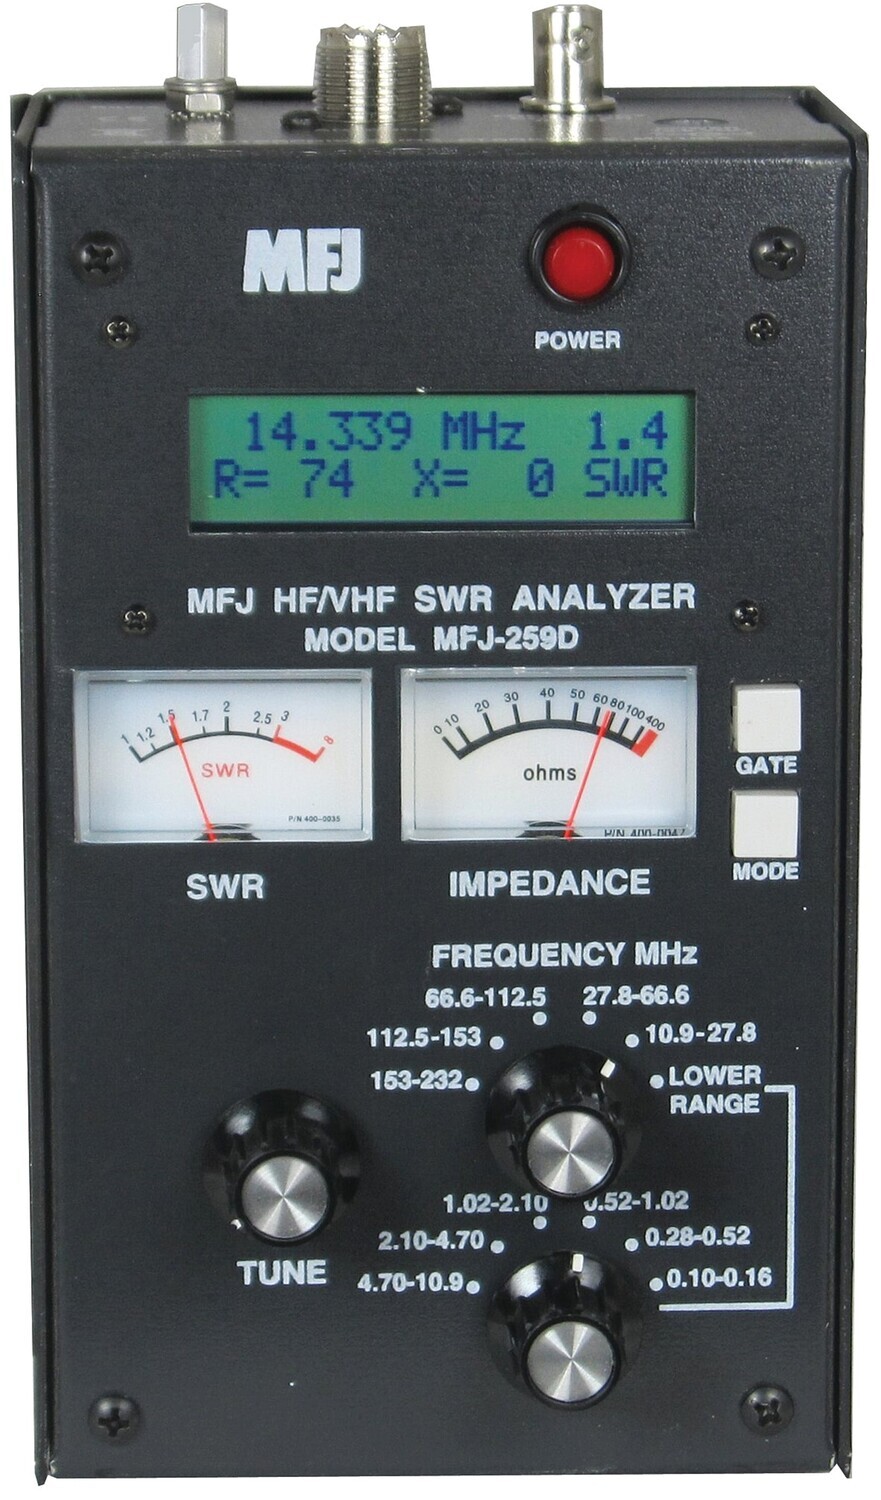 MFJ 259D HF/VHF SWR ANALYZER